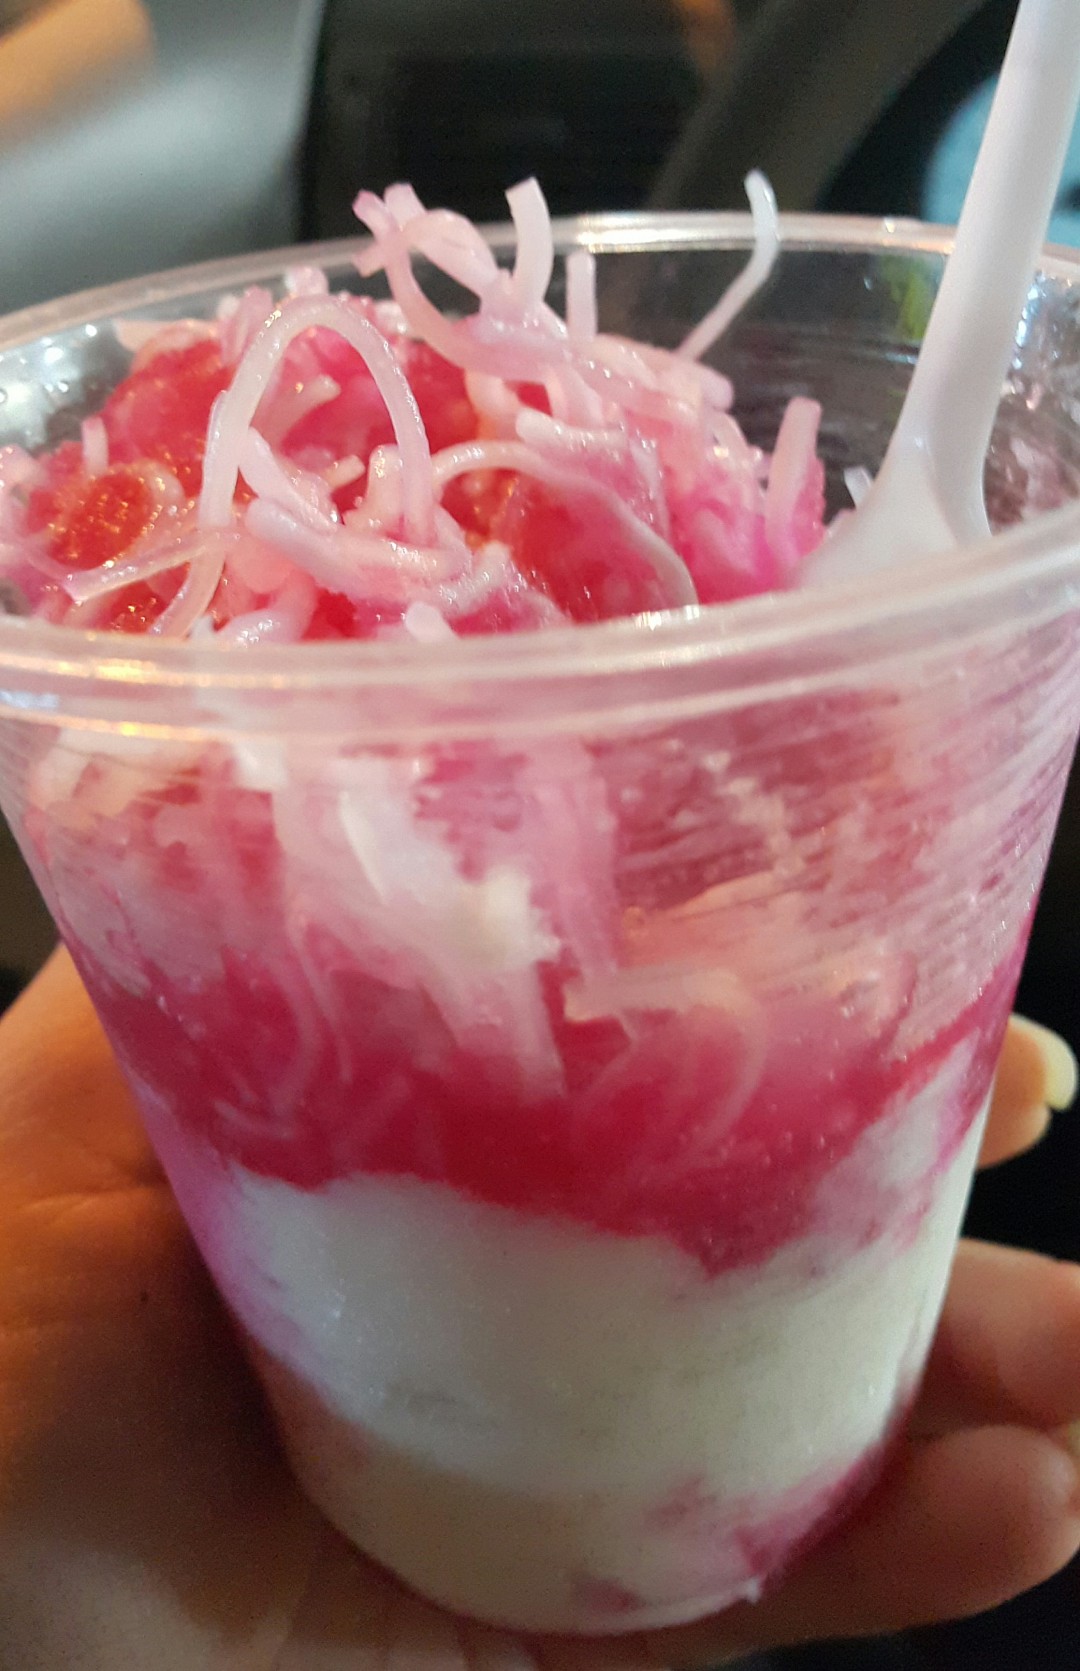 بستنی فالوده شیرازی
Faloodeh & icecream 😜 @ كباب سراي شيراز - البحرين